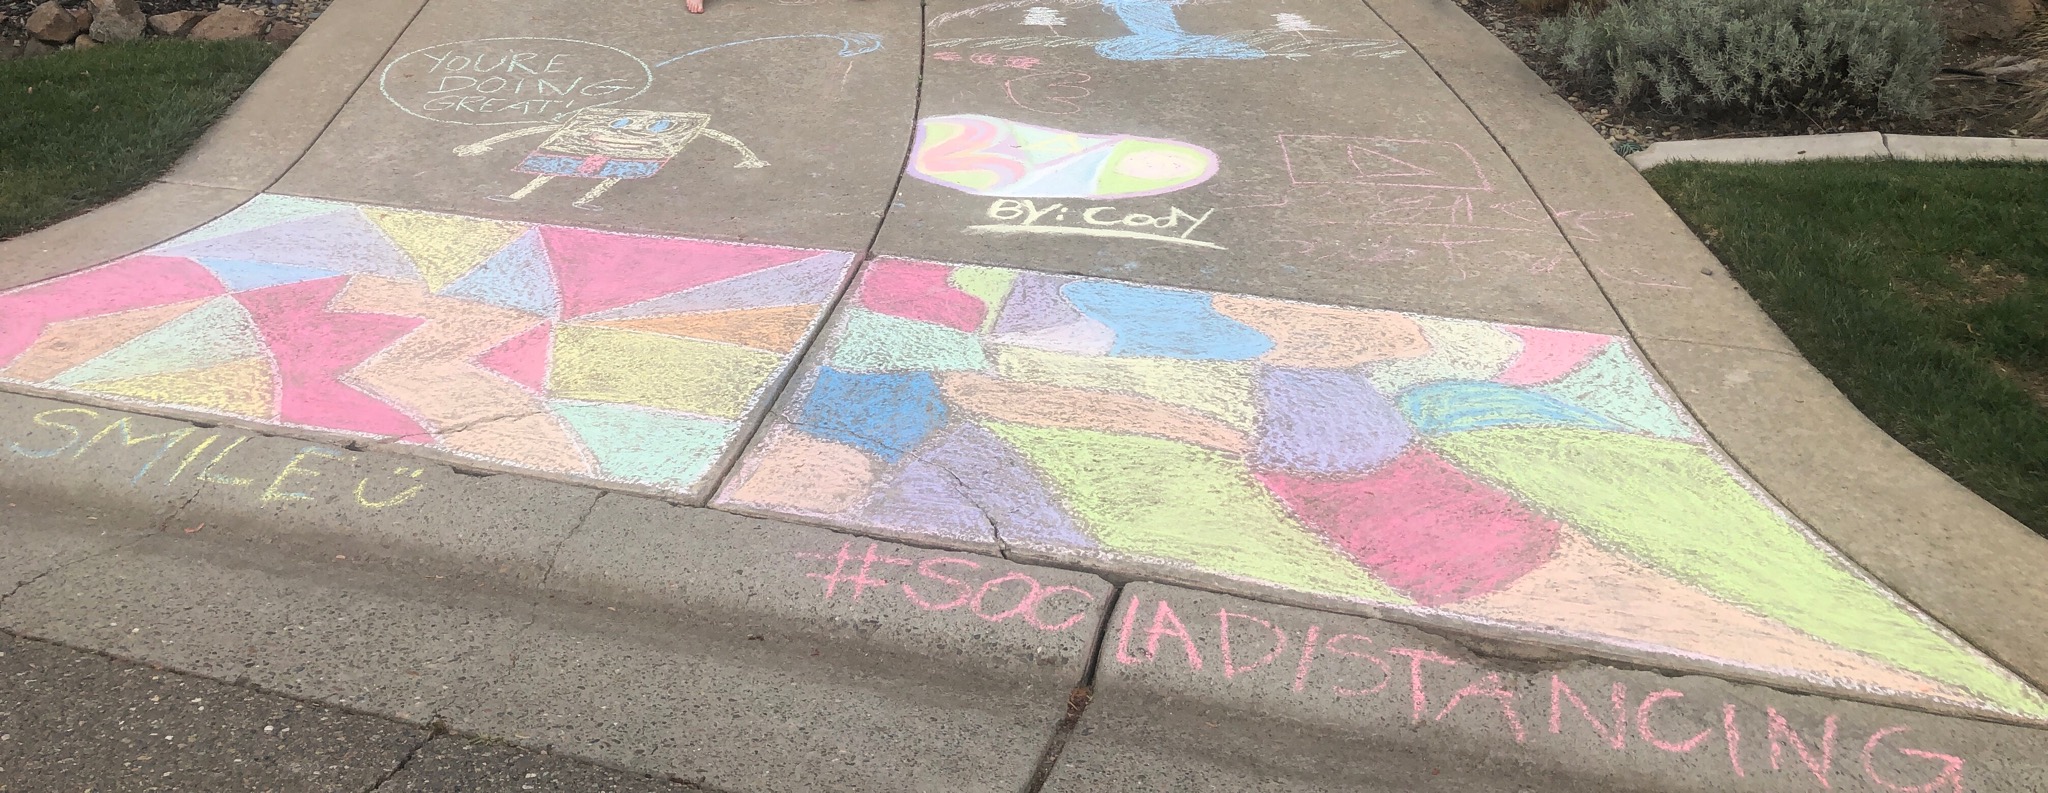 Neighborhood sidewalk features artwork from children drawn in chalk